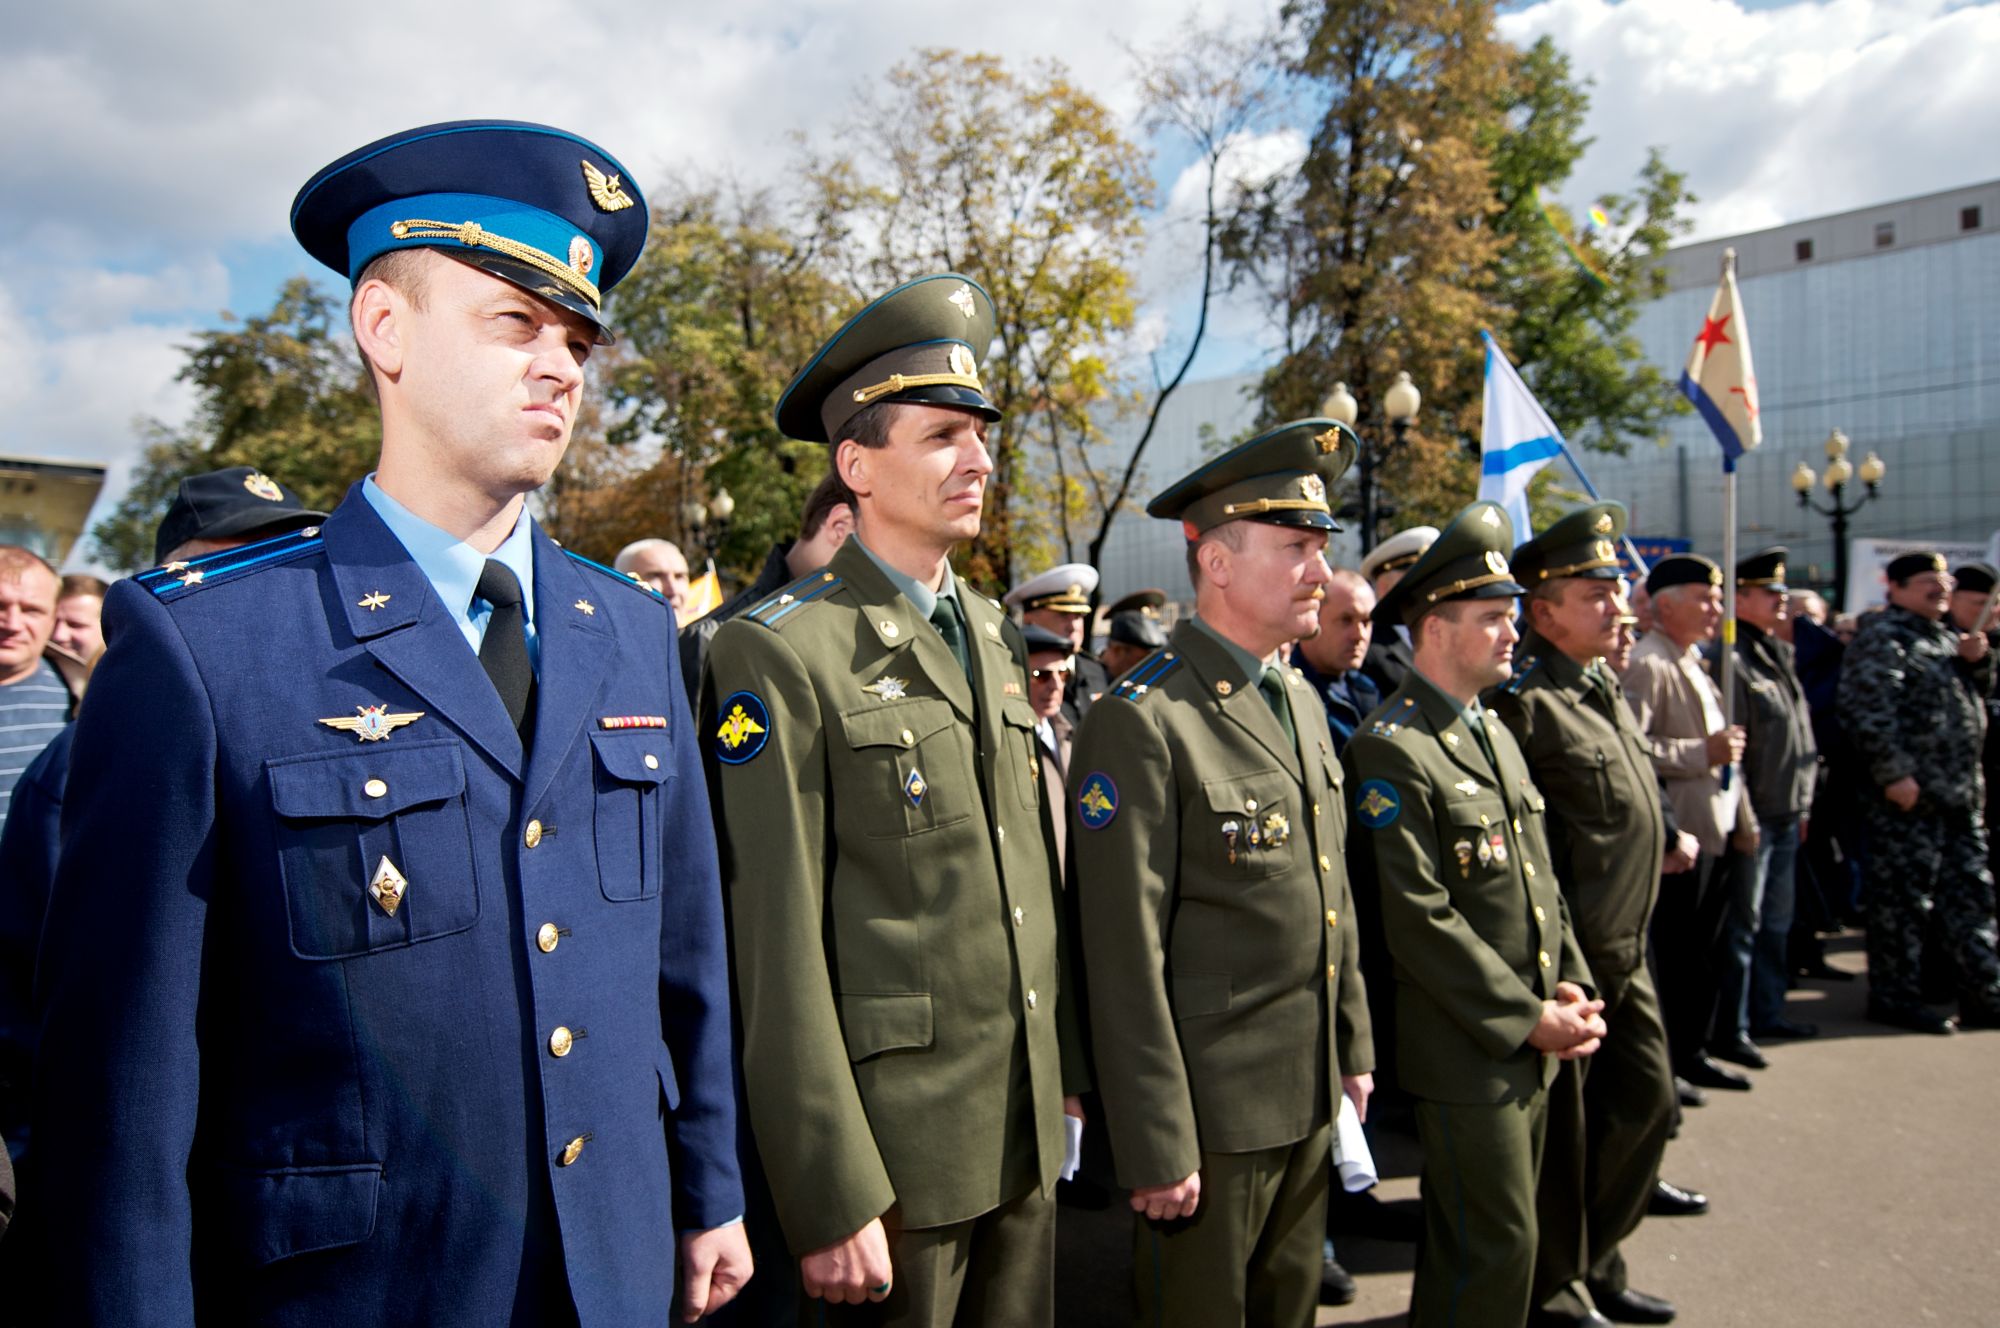 Парадная форма российских вооруженных сил